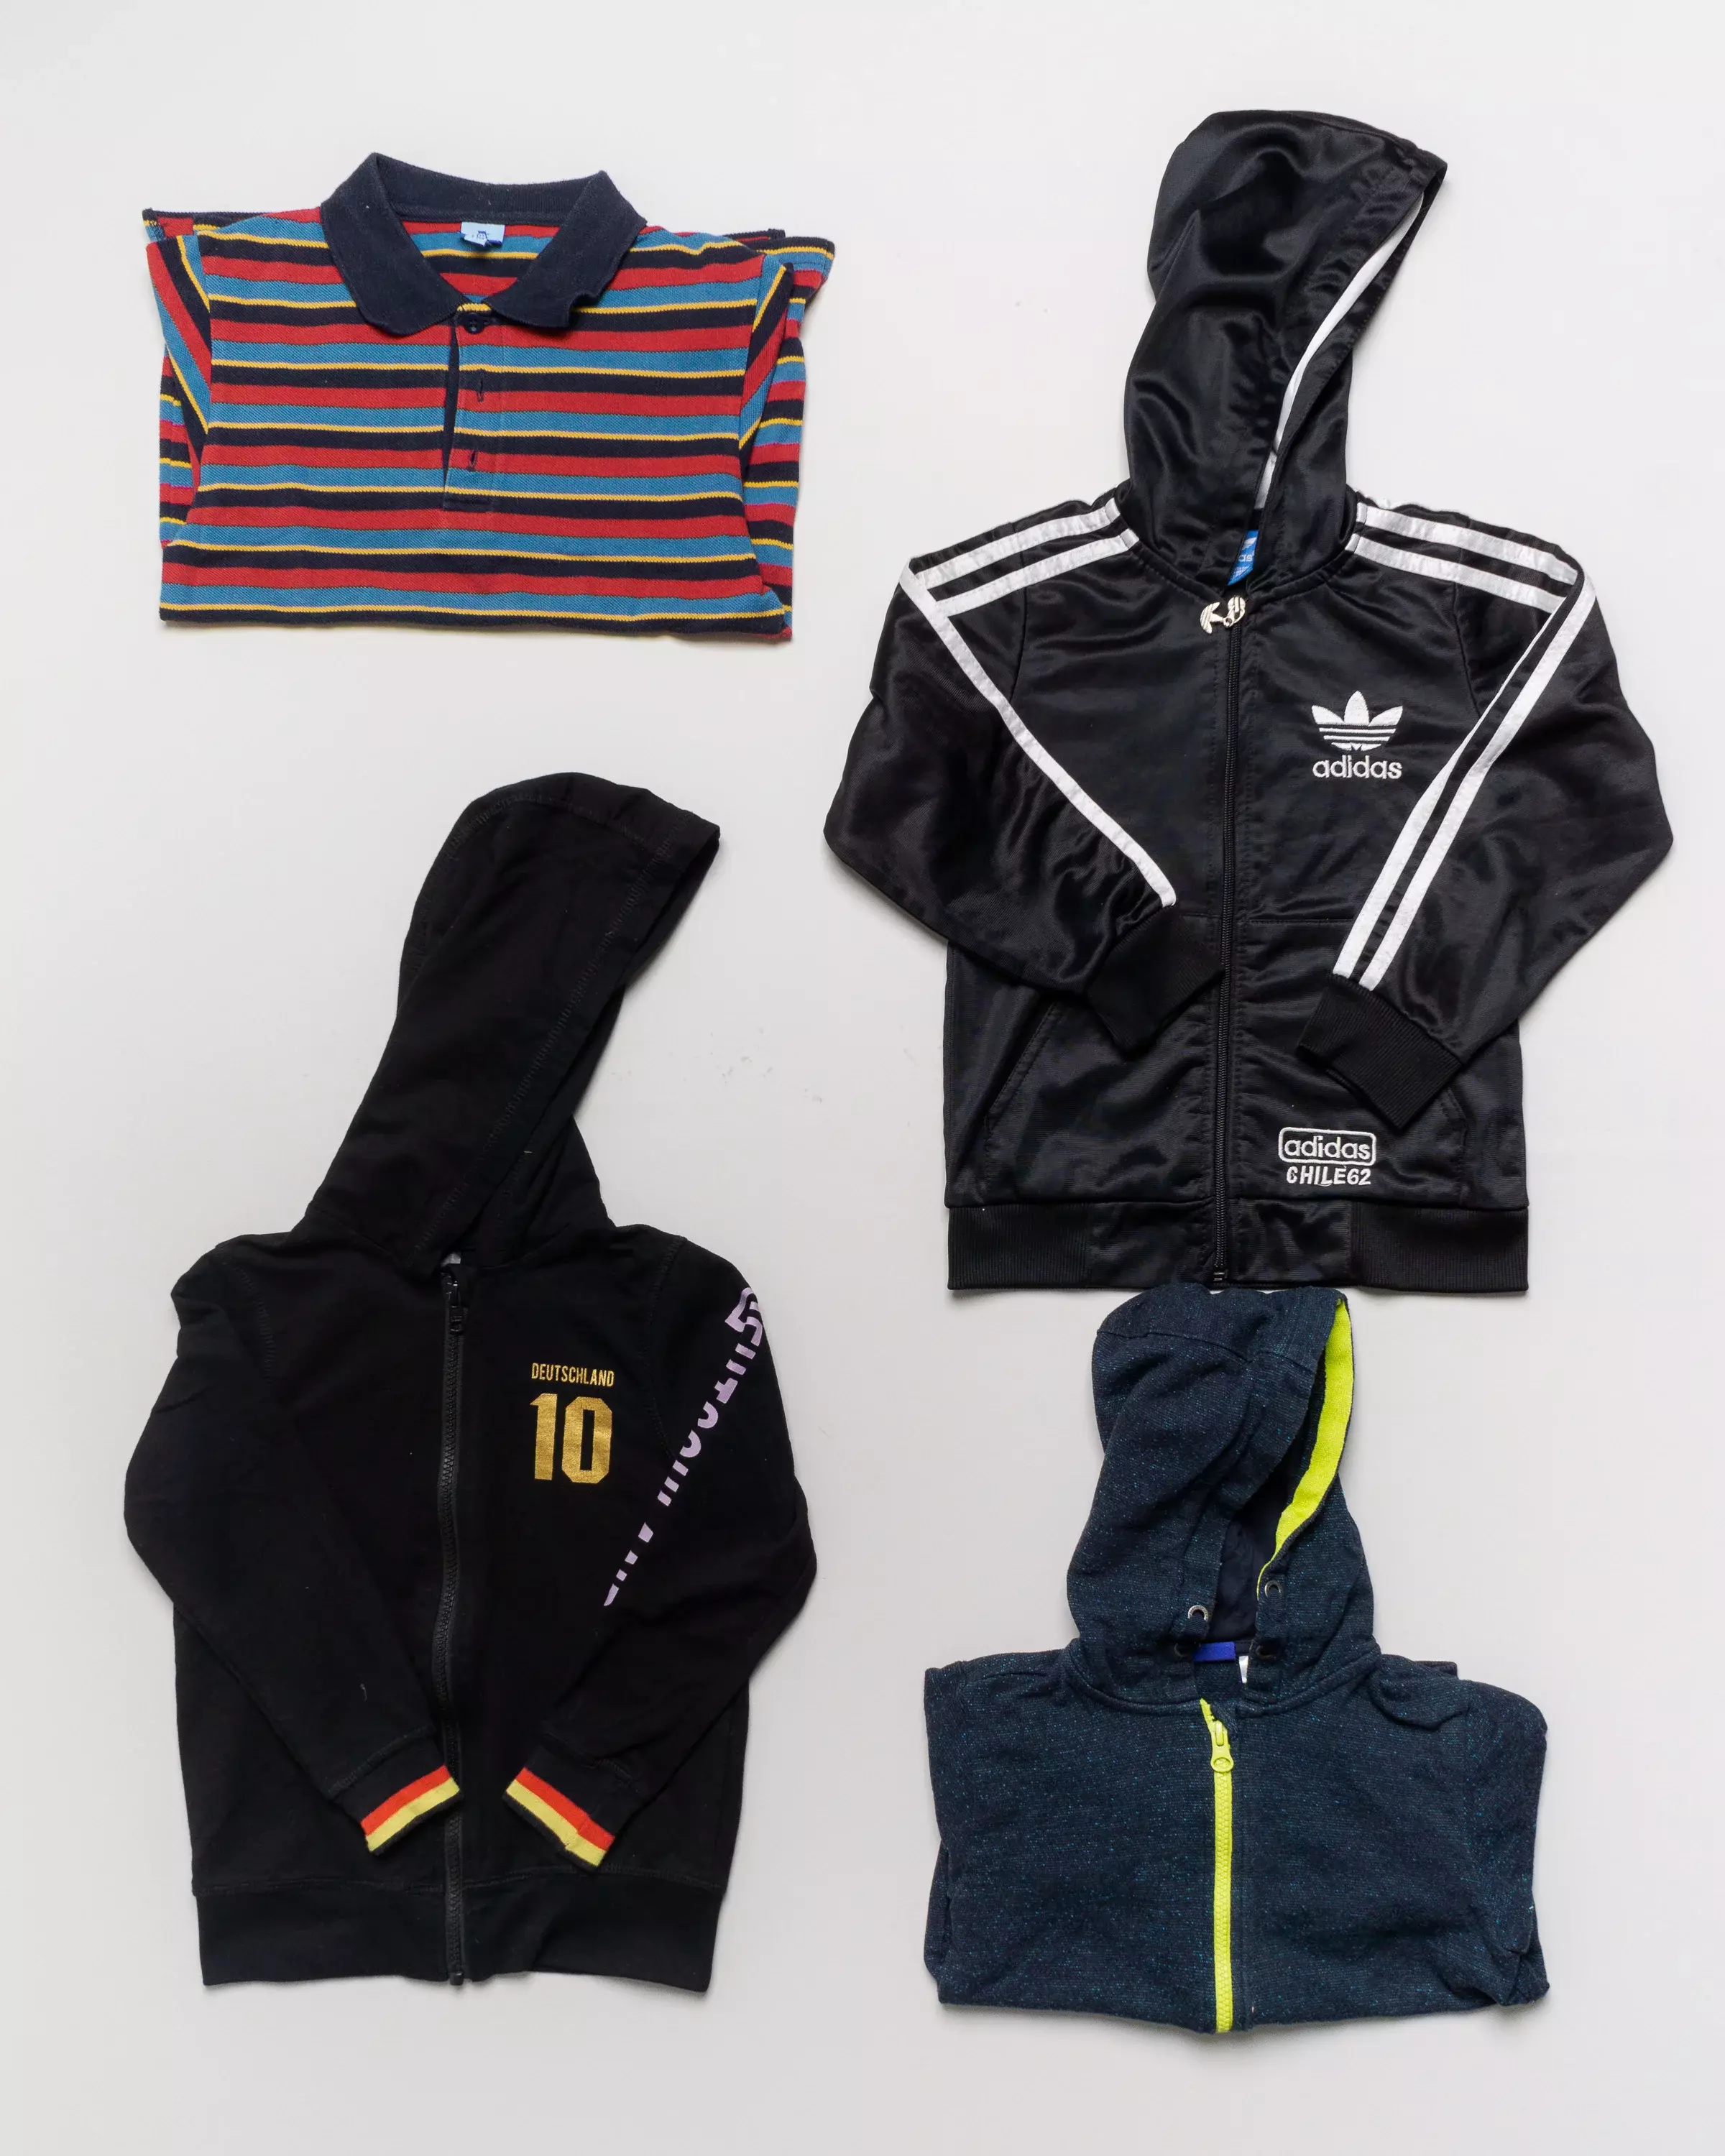 4 im Set: 1 Polohemd, 3 Sweatjacken Gr. 110 – Adidas, Streifen, rot, schwarz, Pack